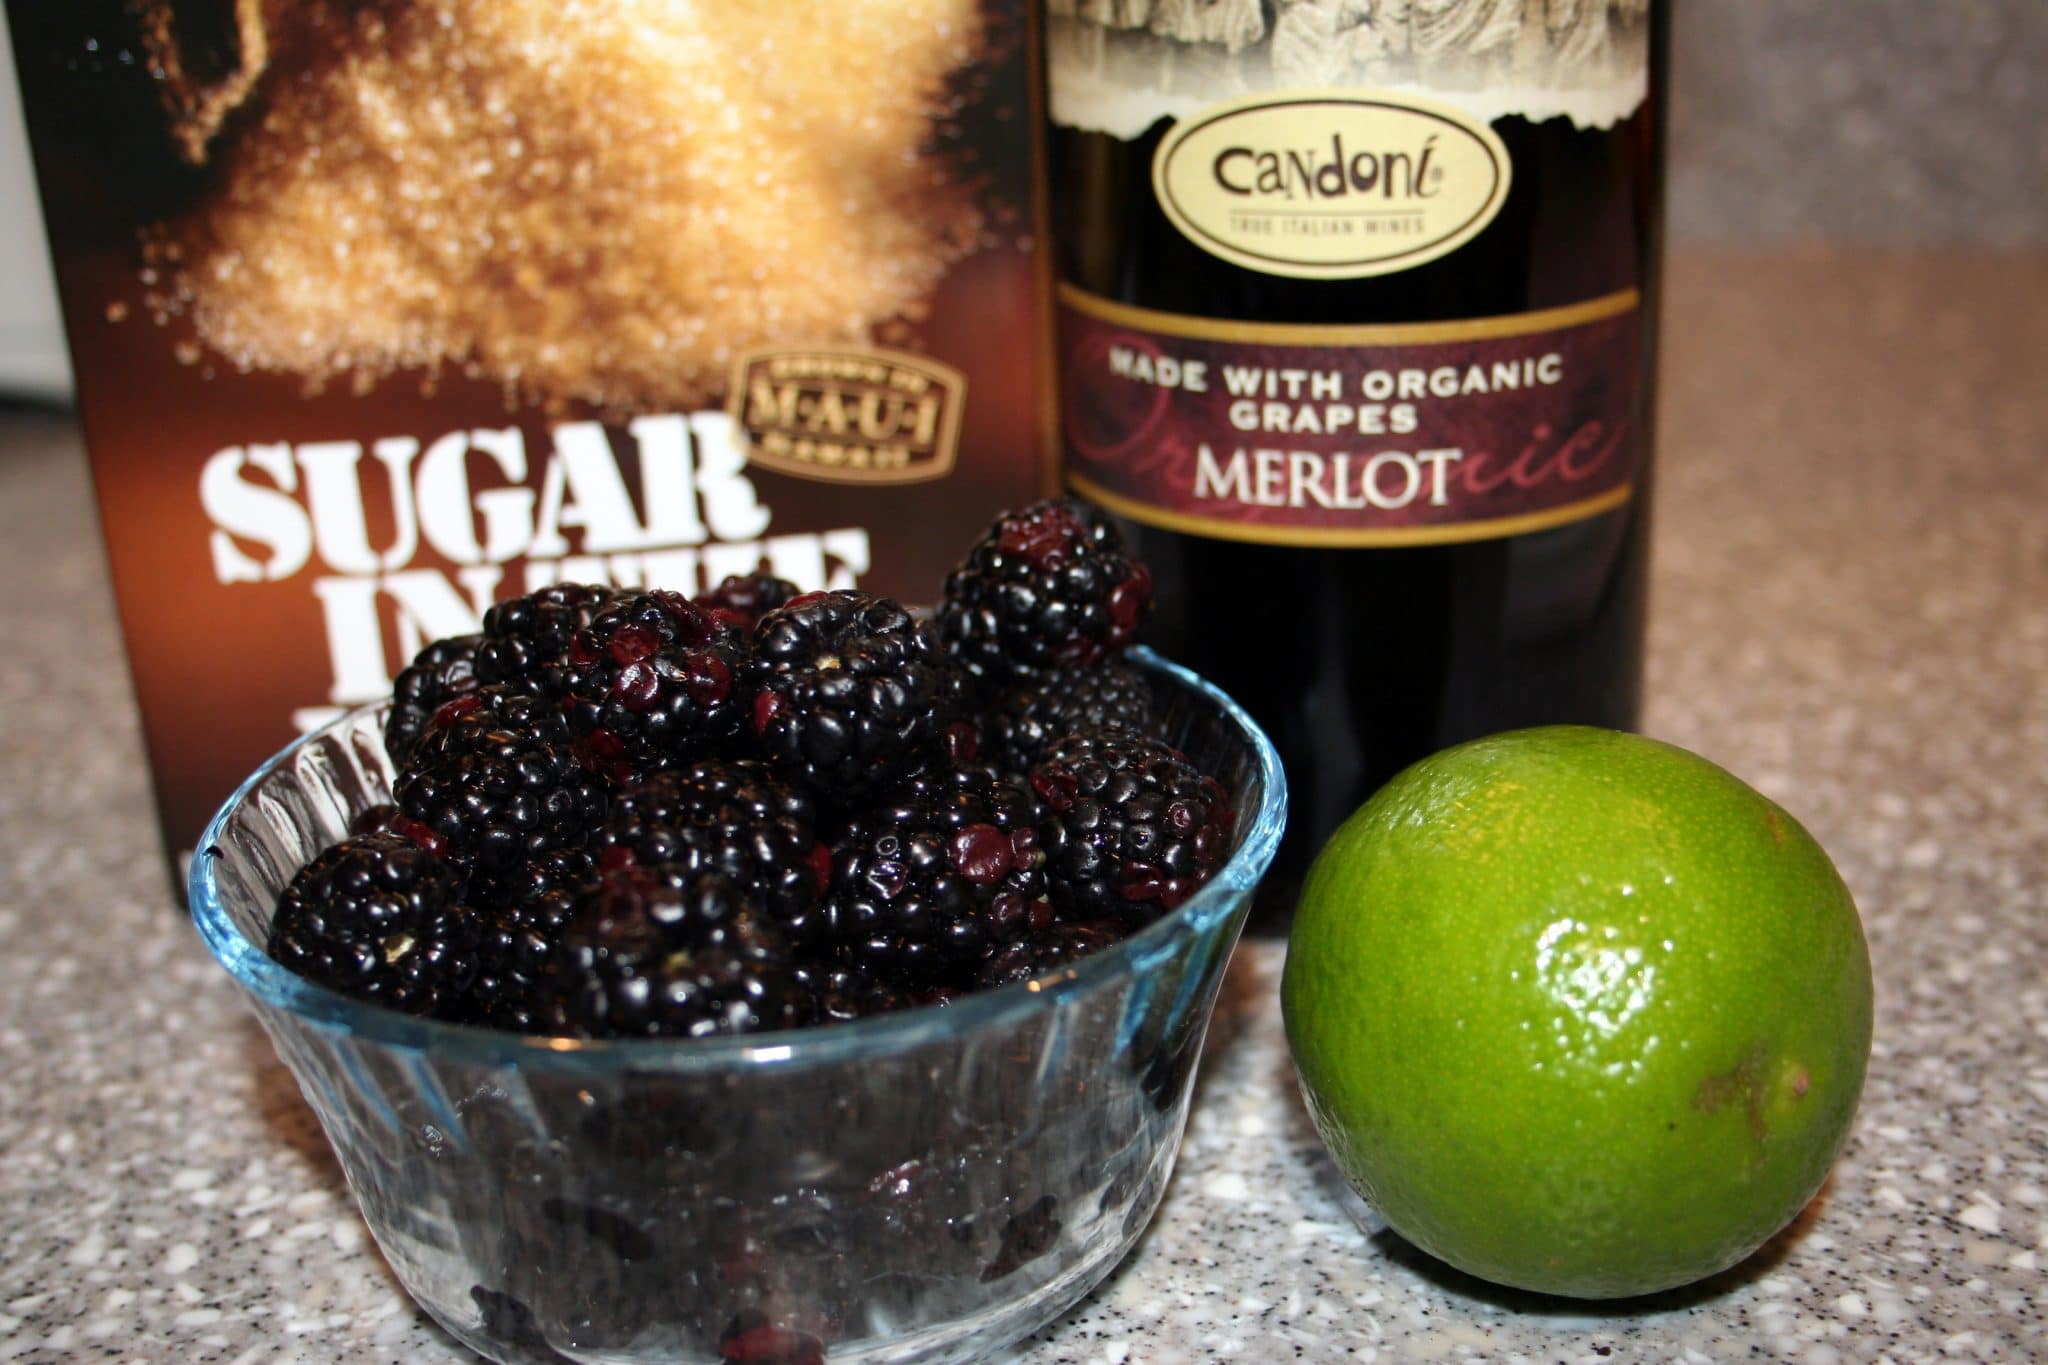 Ingredients for sorbet: Merlot, blackberries, lime and sugar